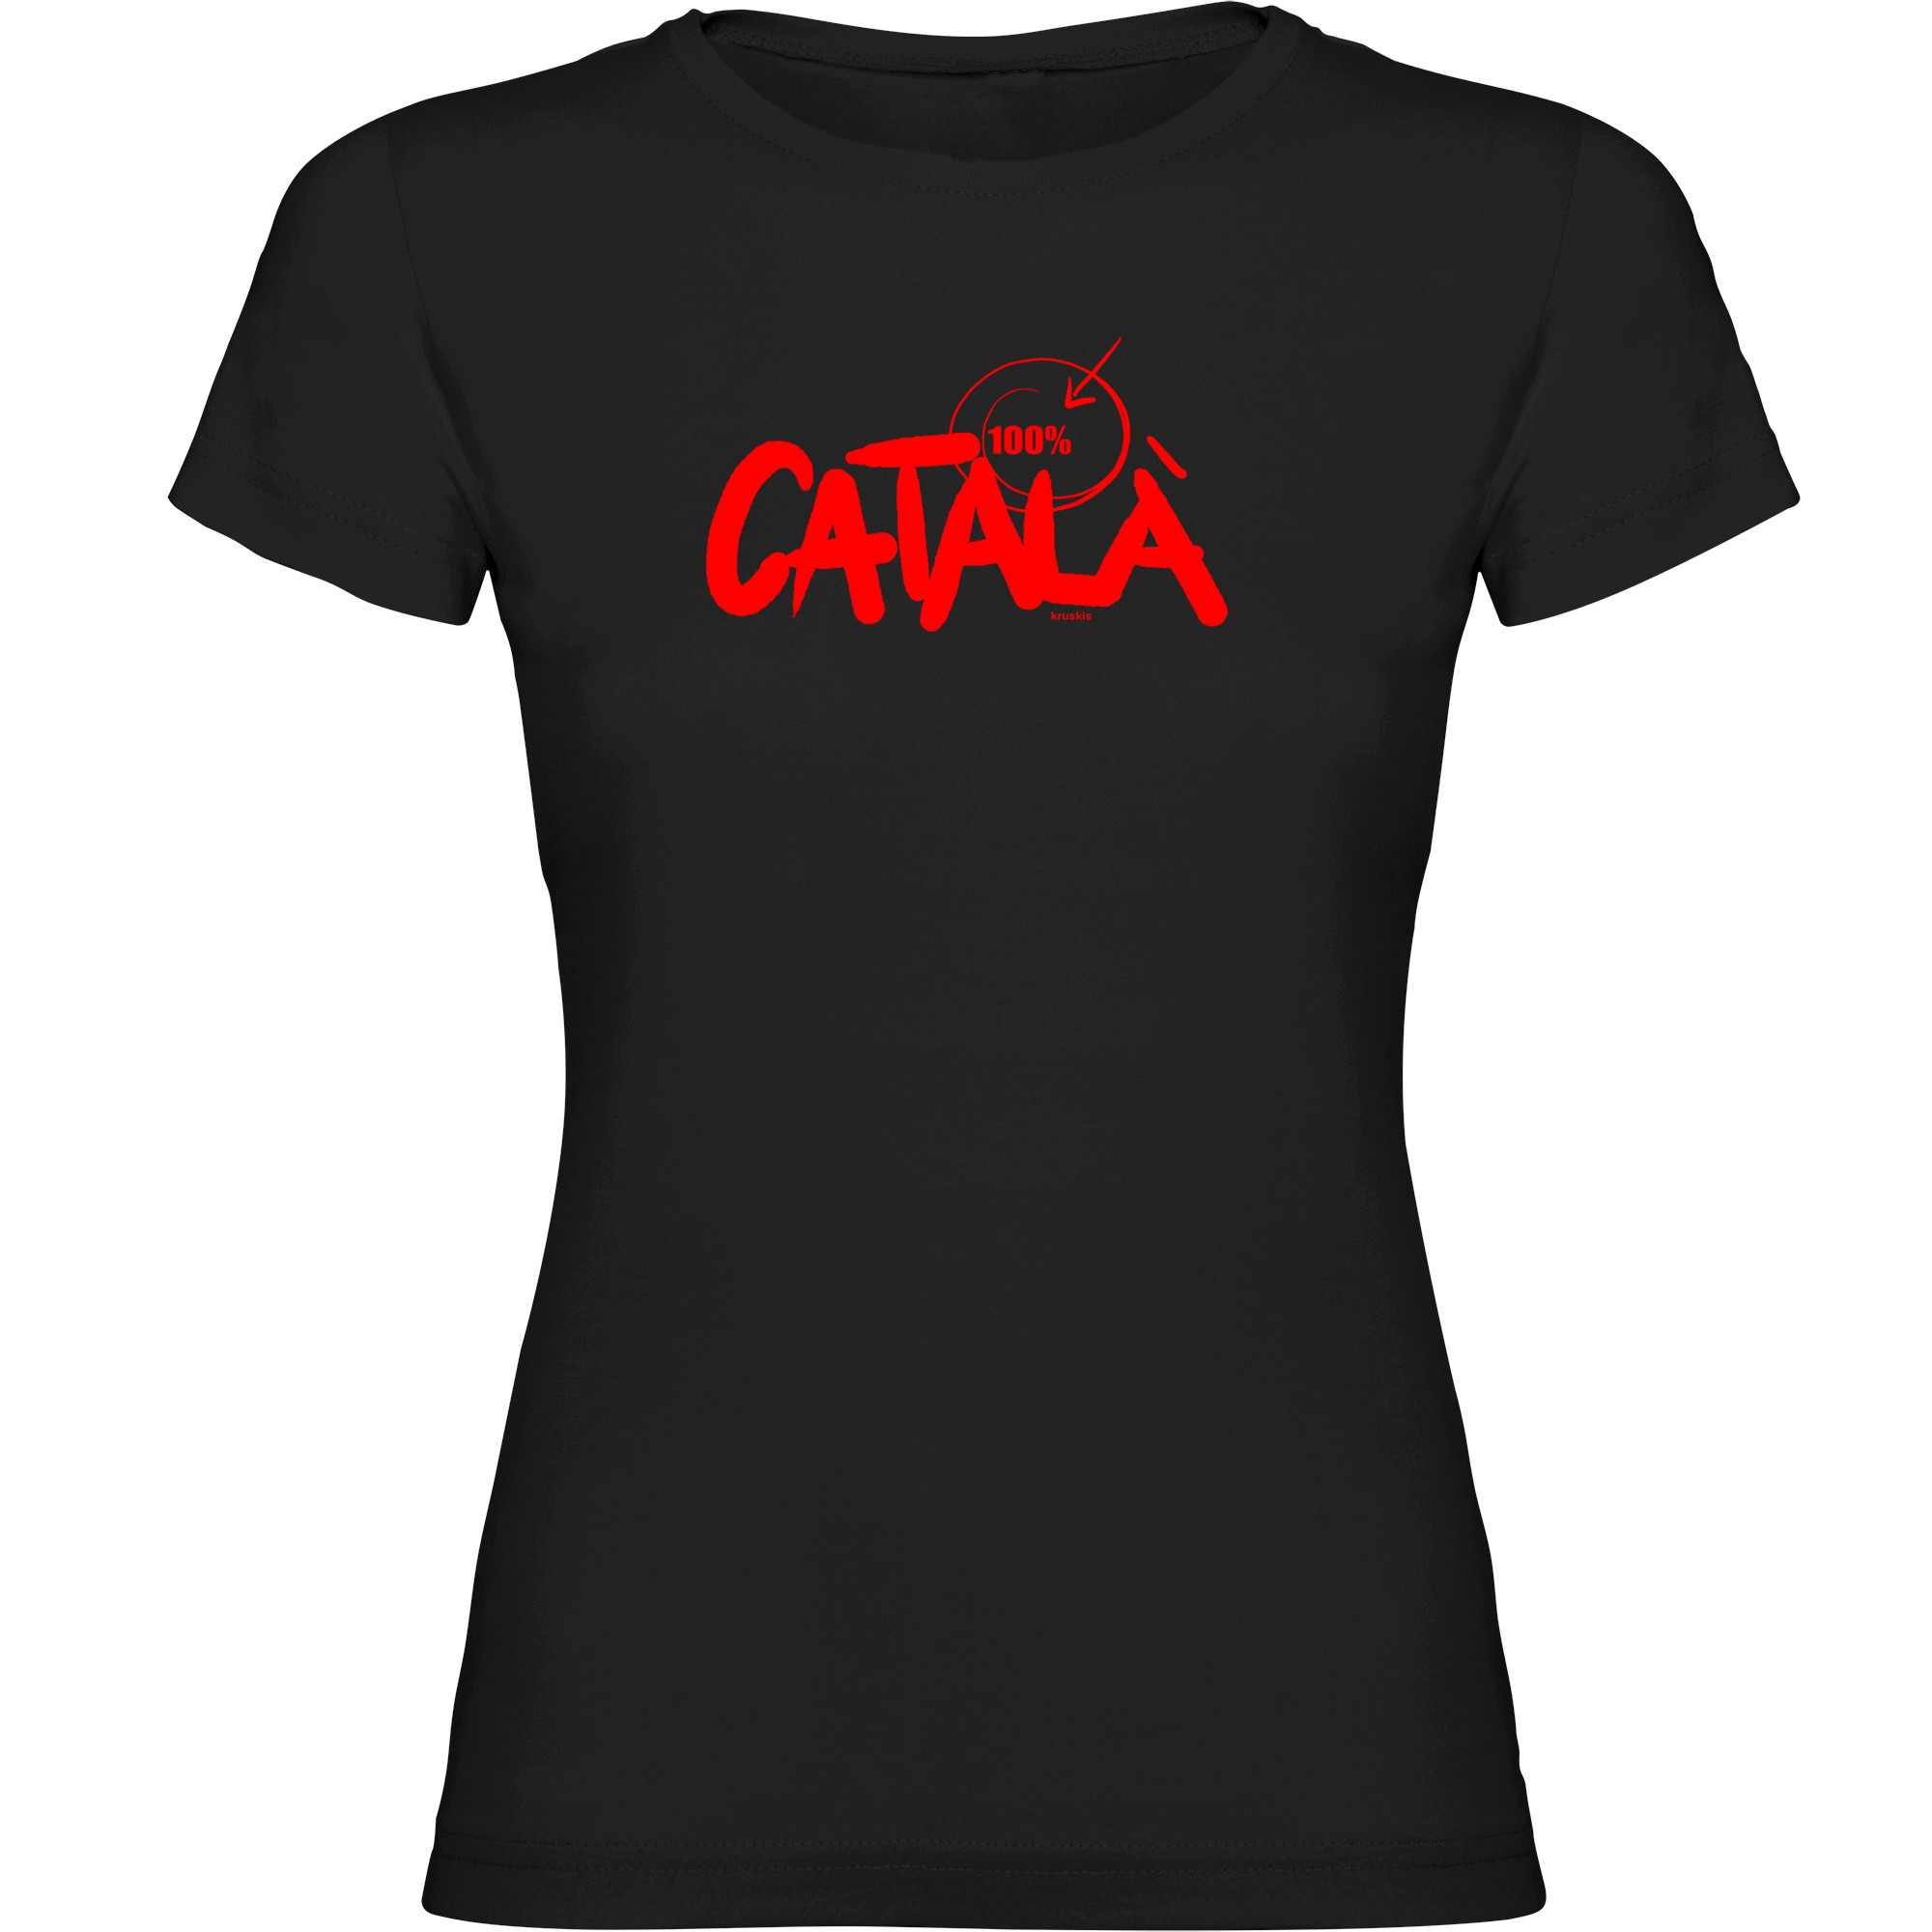 T Shirt Katalonien 100% Catala Zurzarm Frau